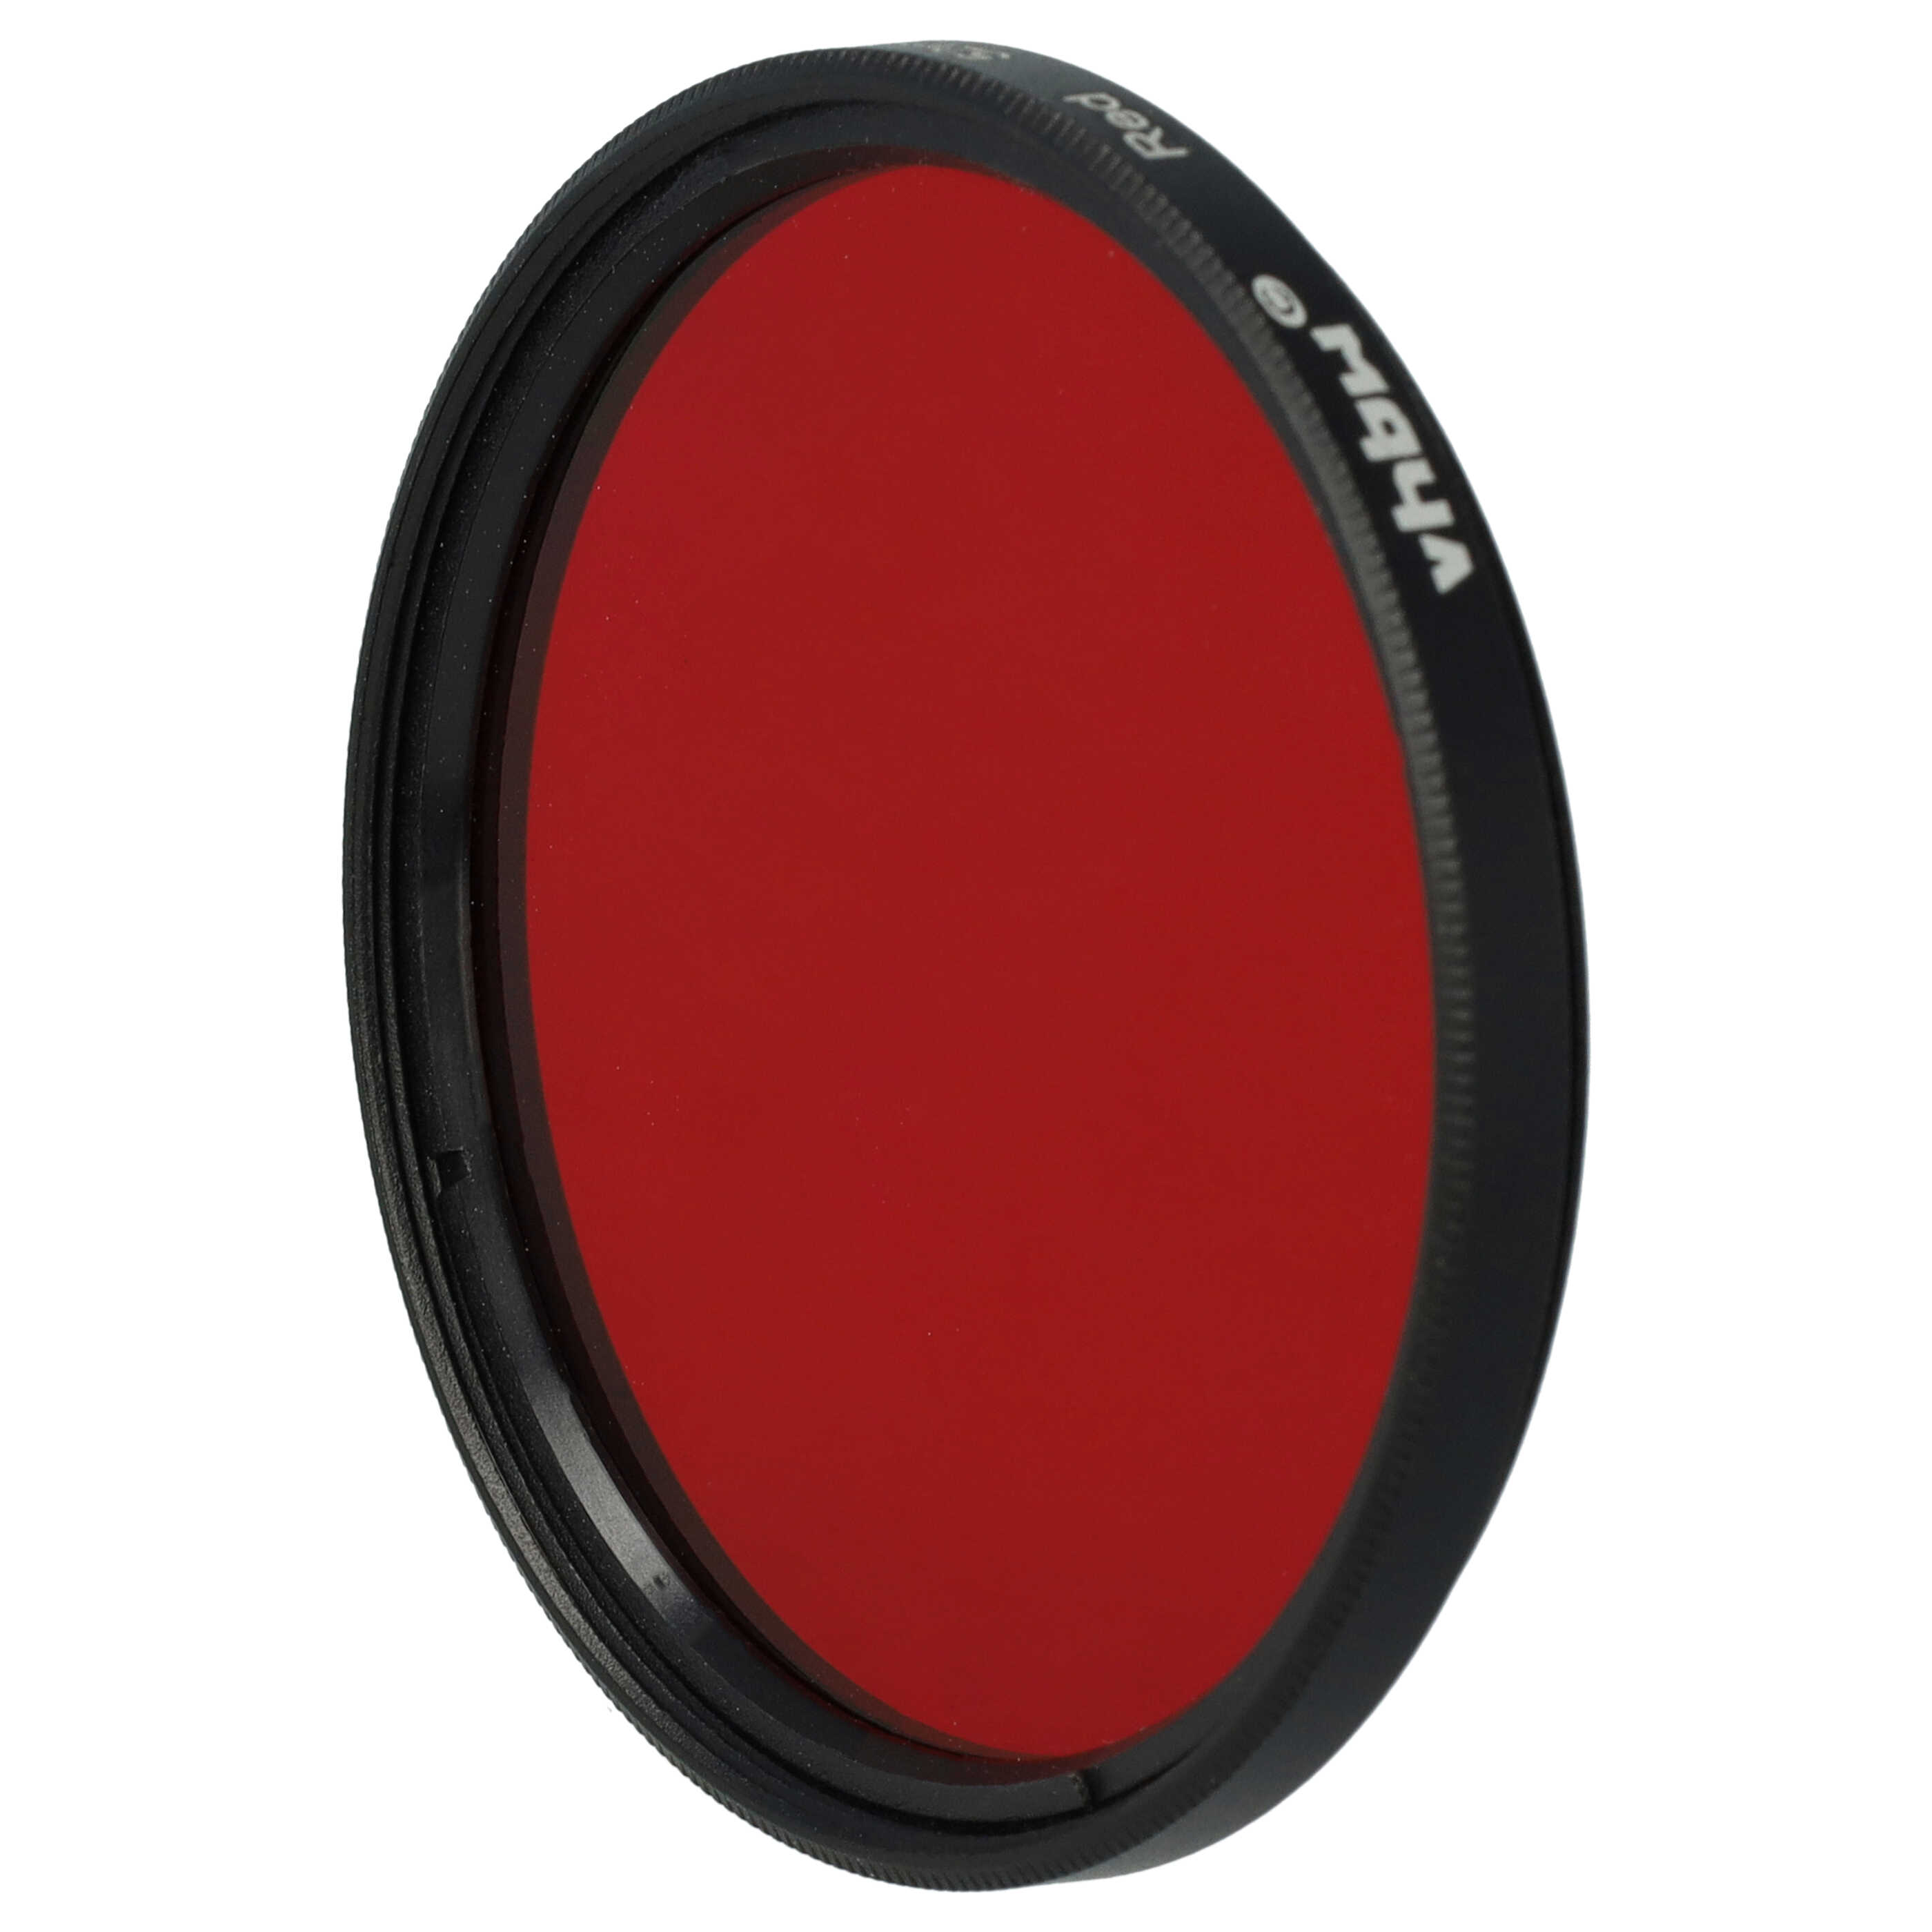 Farbfilter rot passend für Kamera Objektive mit 52 mm Filtergewinde - Rotfilter